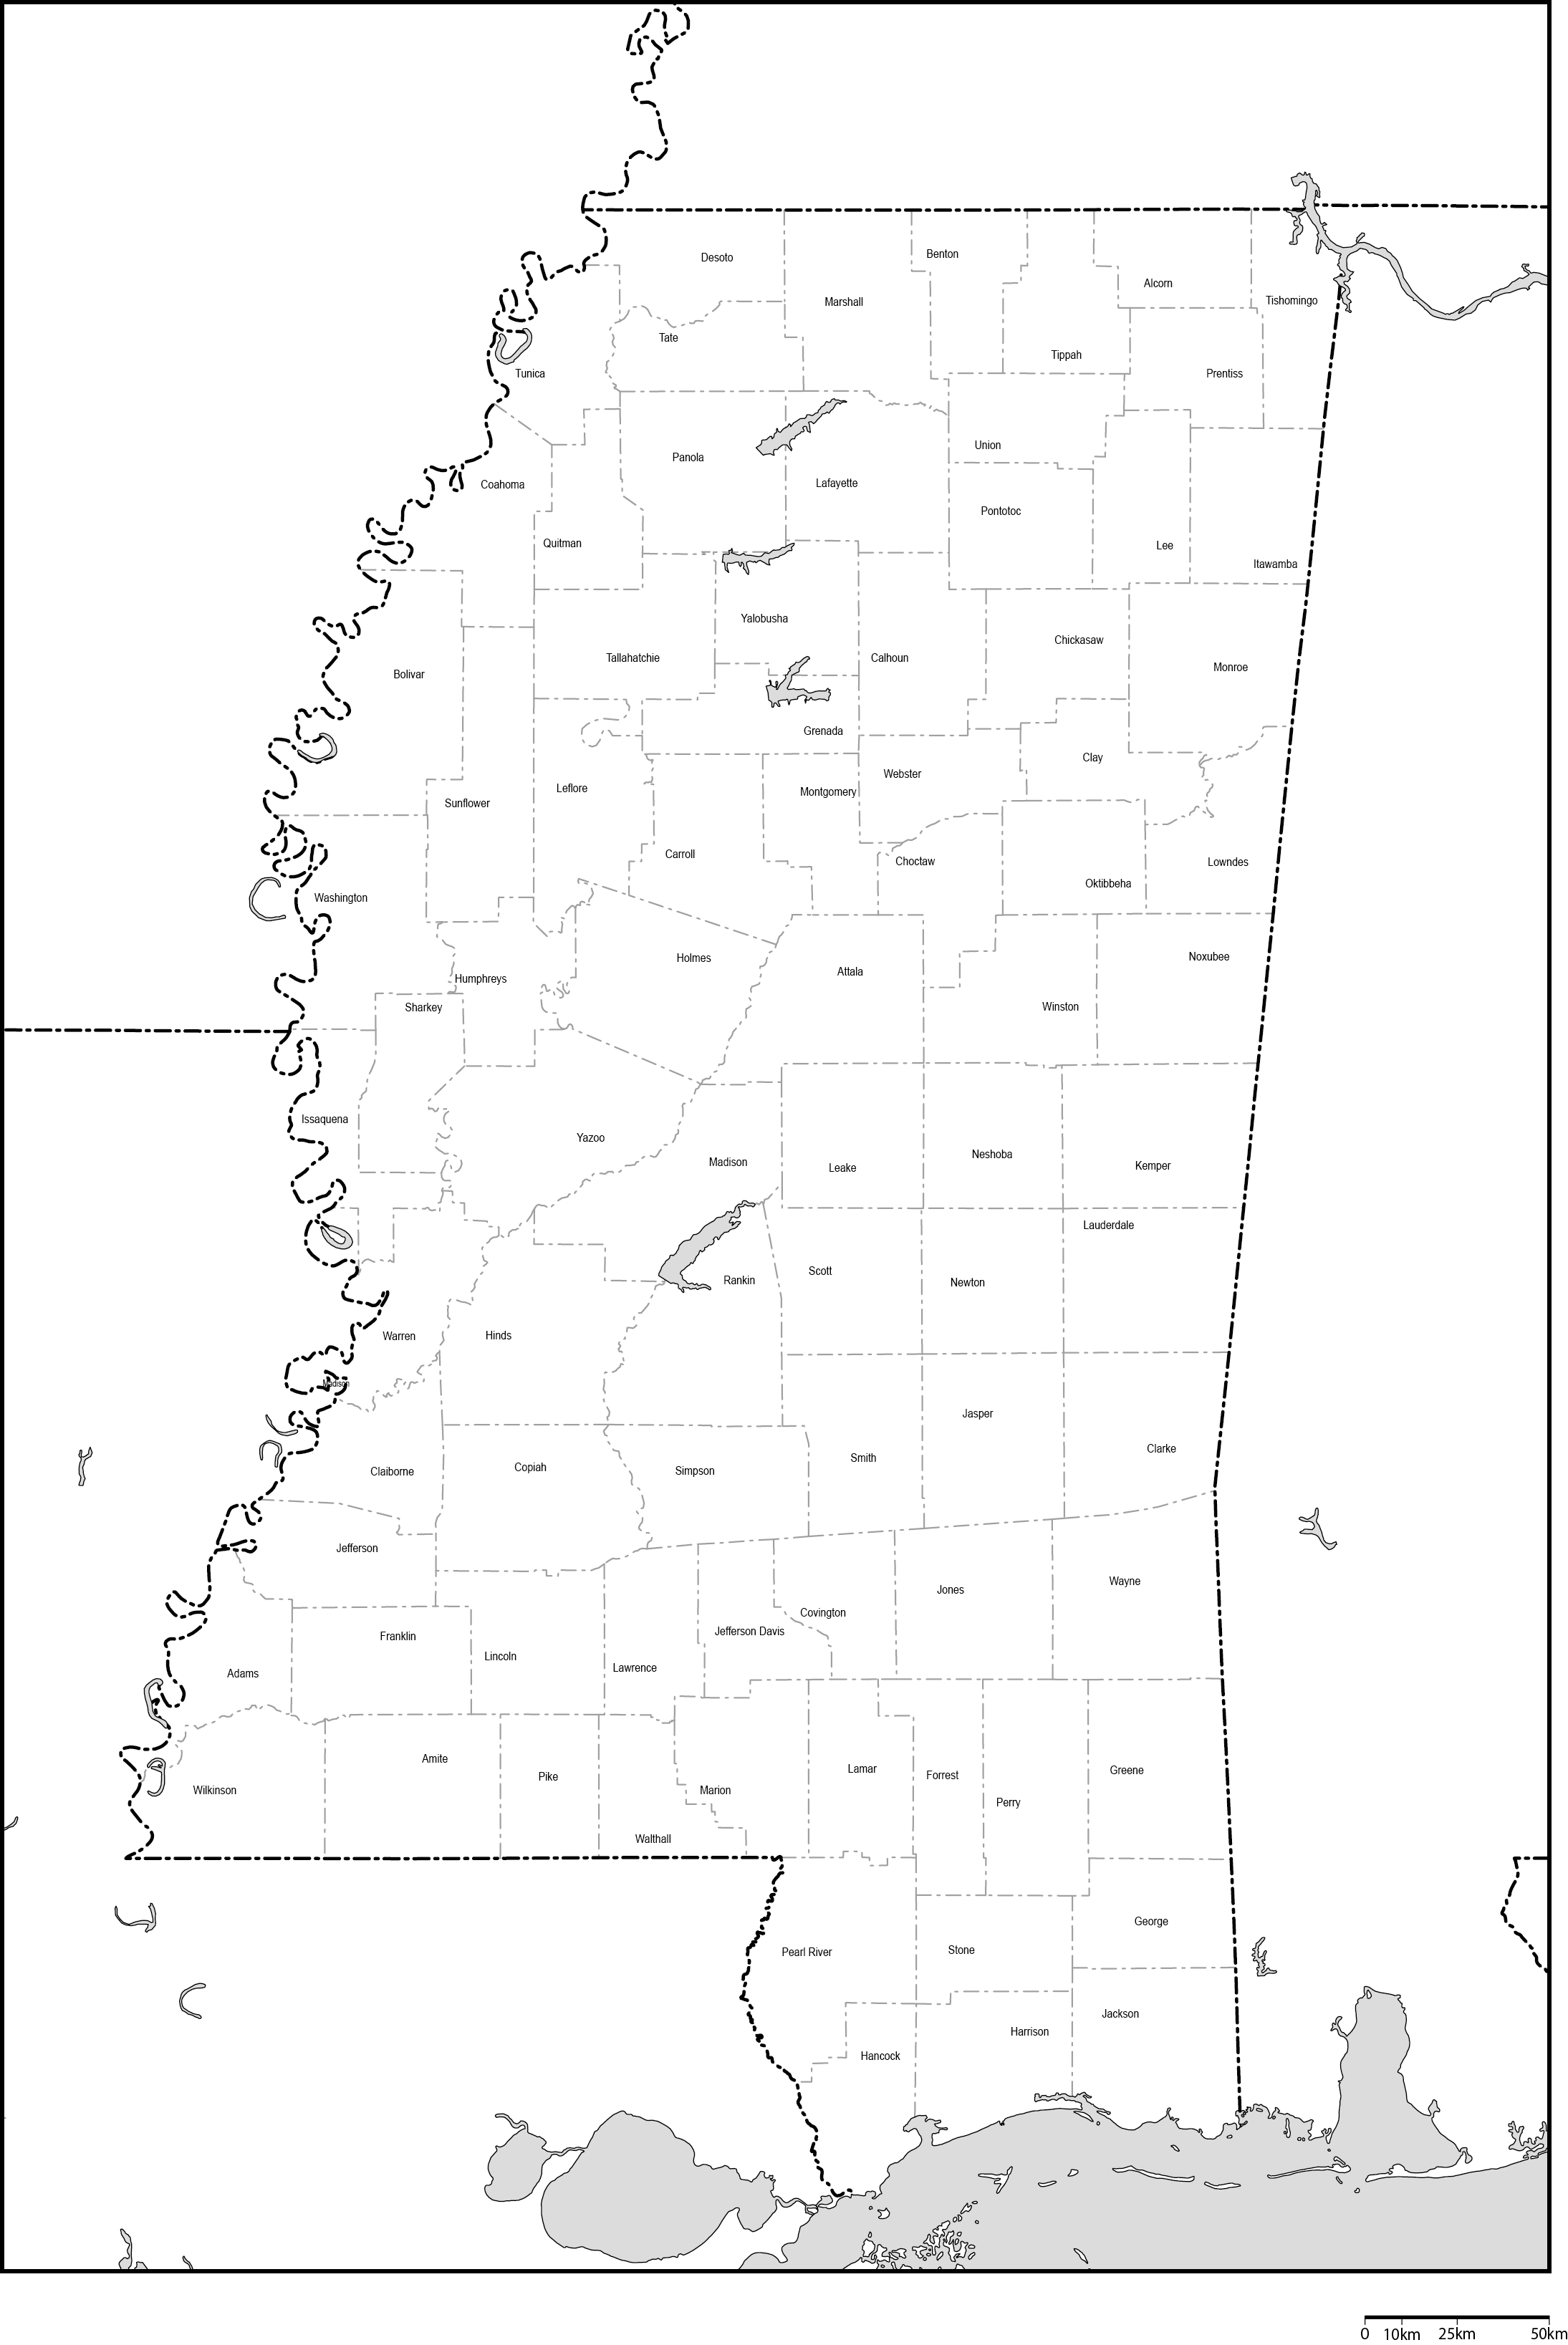 ミシシッピ州郡分け白地図郡名あり(英語)フリーデータの画像